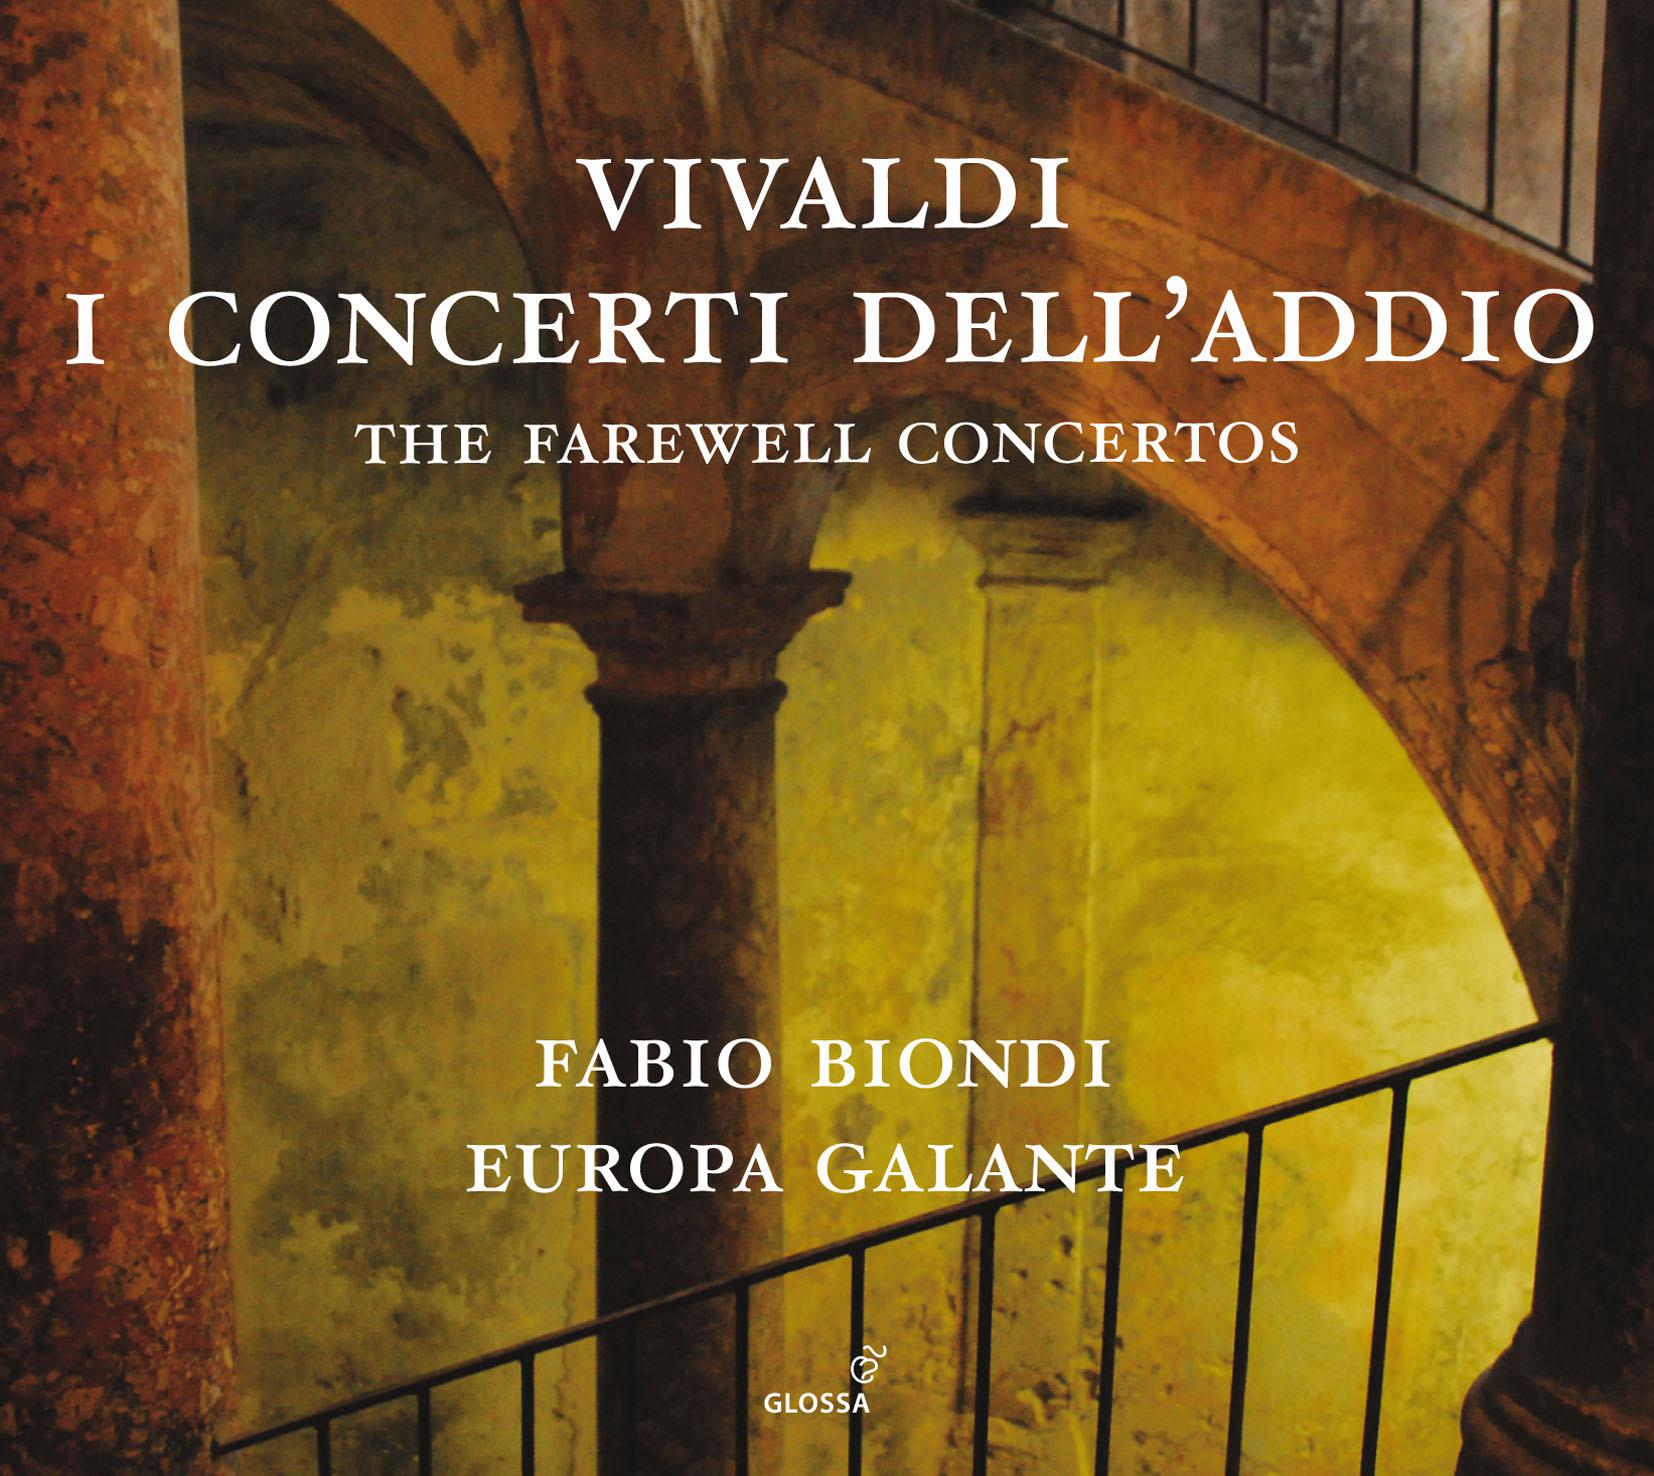 Violin Concerto in C Major, RV 189: III. Allegro molto